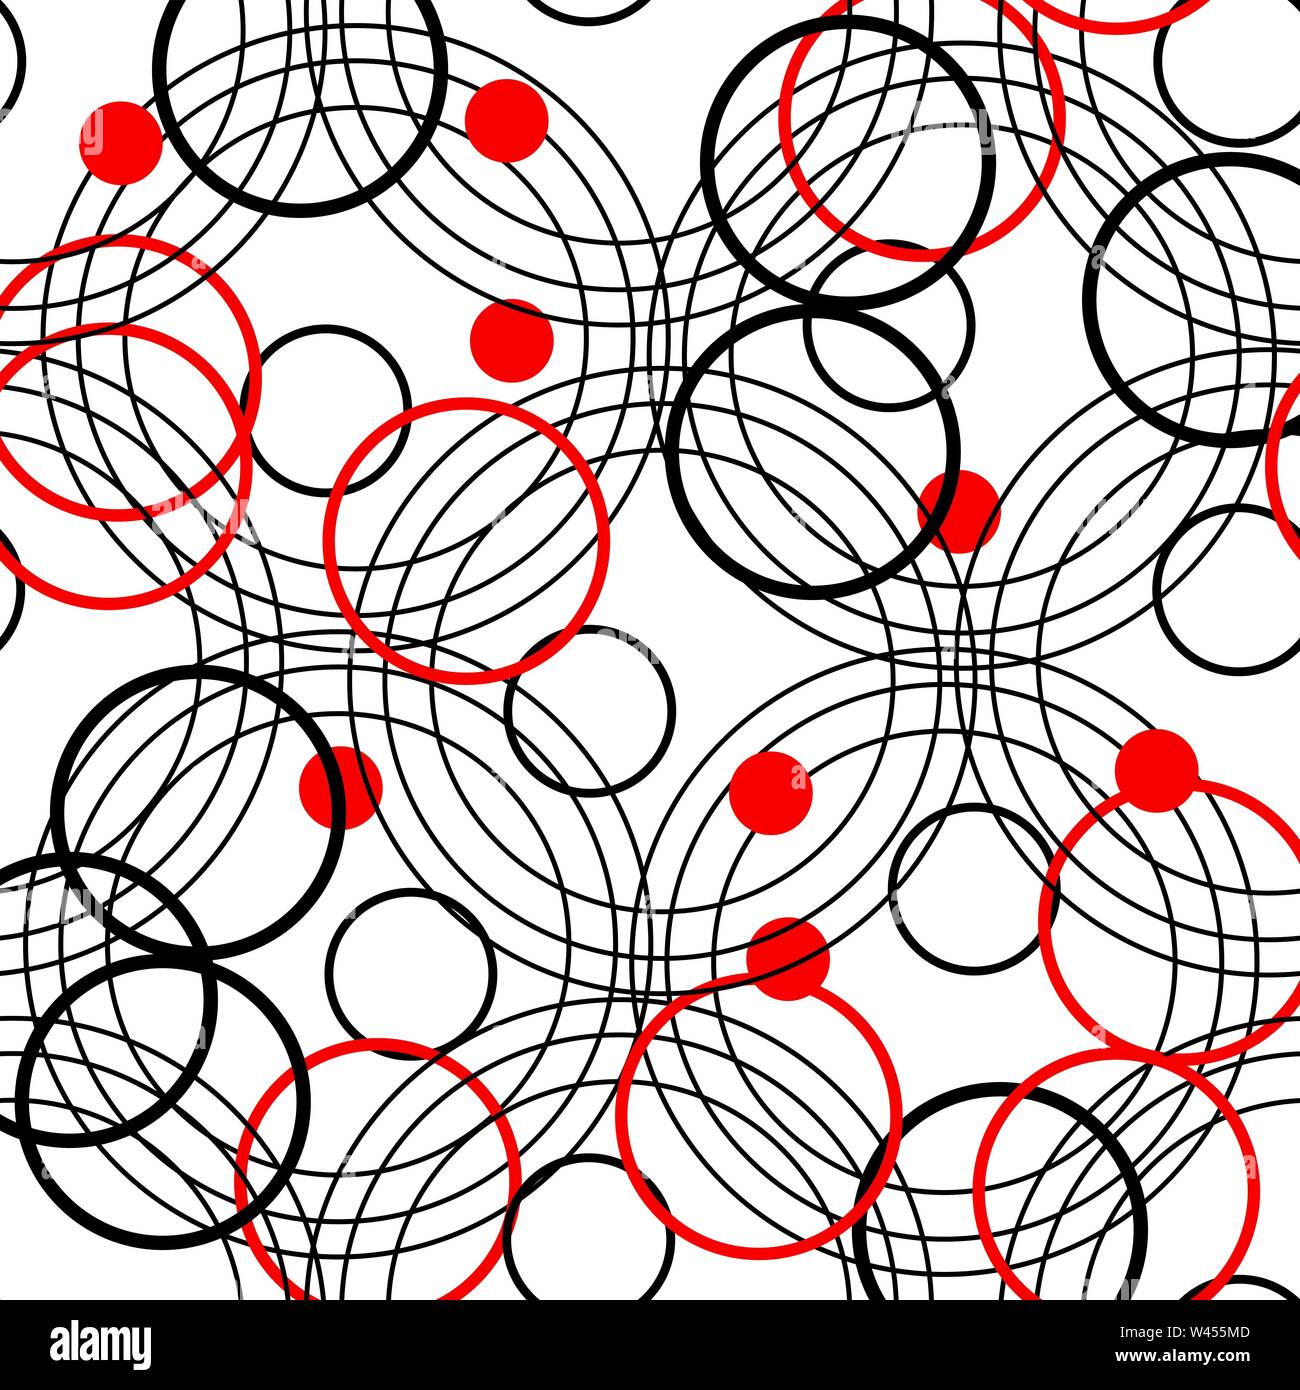 Những họa tiết vòng tròn đơn giản nhưng mạnh mẽ bằng màu đỏ và đen trên nền trắng sẽ khiến bạn rất ngạc nhiên. Đến và cùng khám phá những bức tranh sáng tạo đầy tính nghệ thuật với họa tiết này!